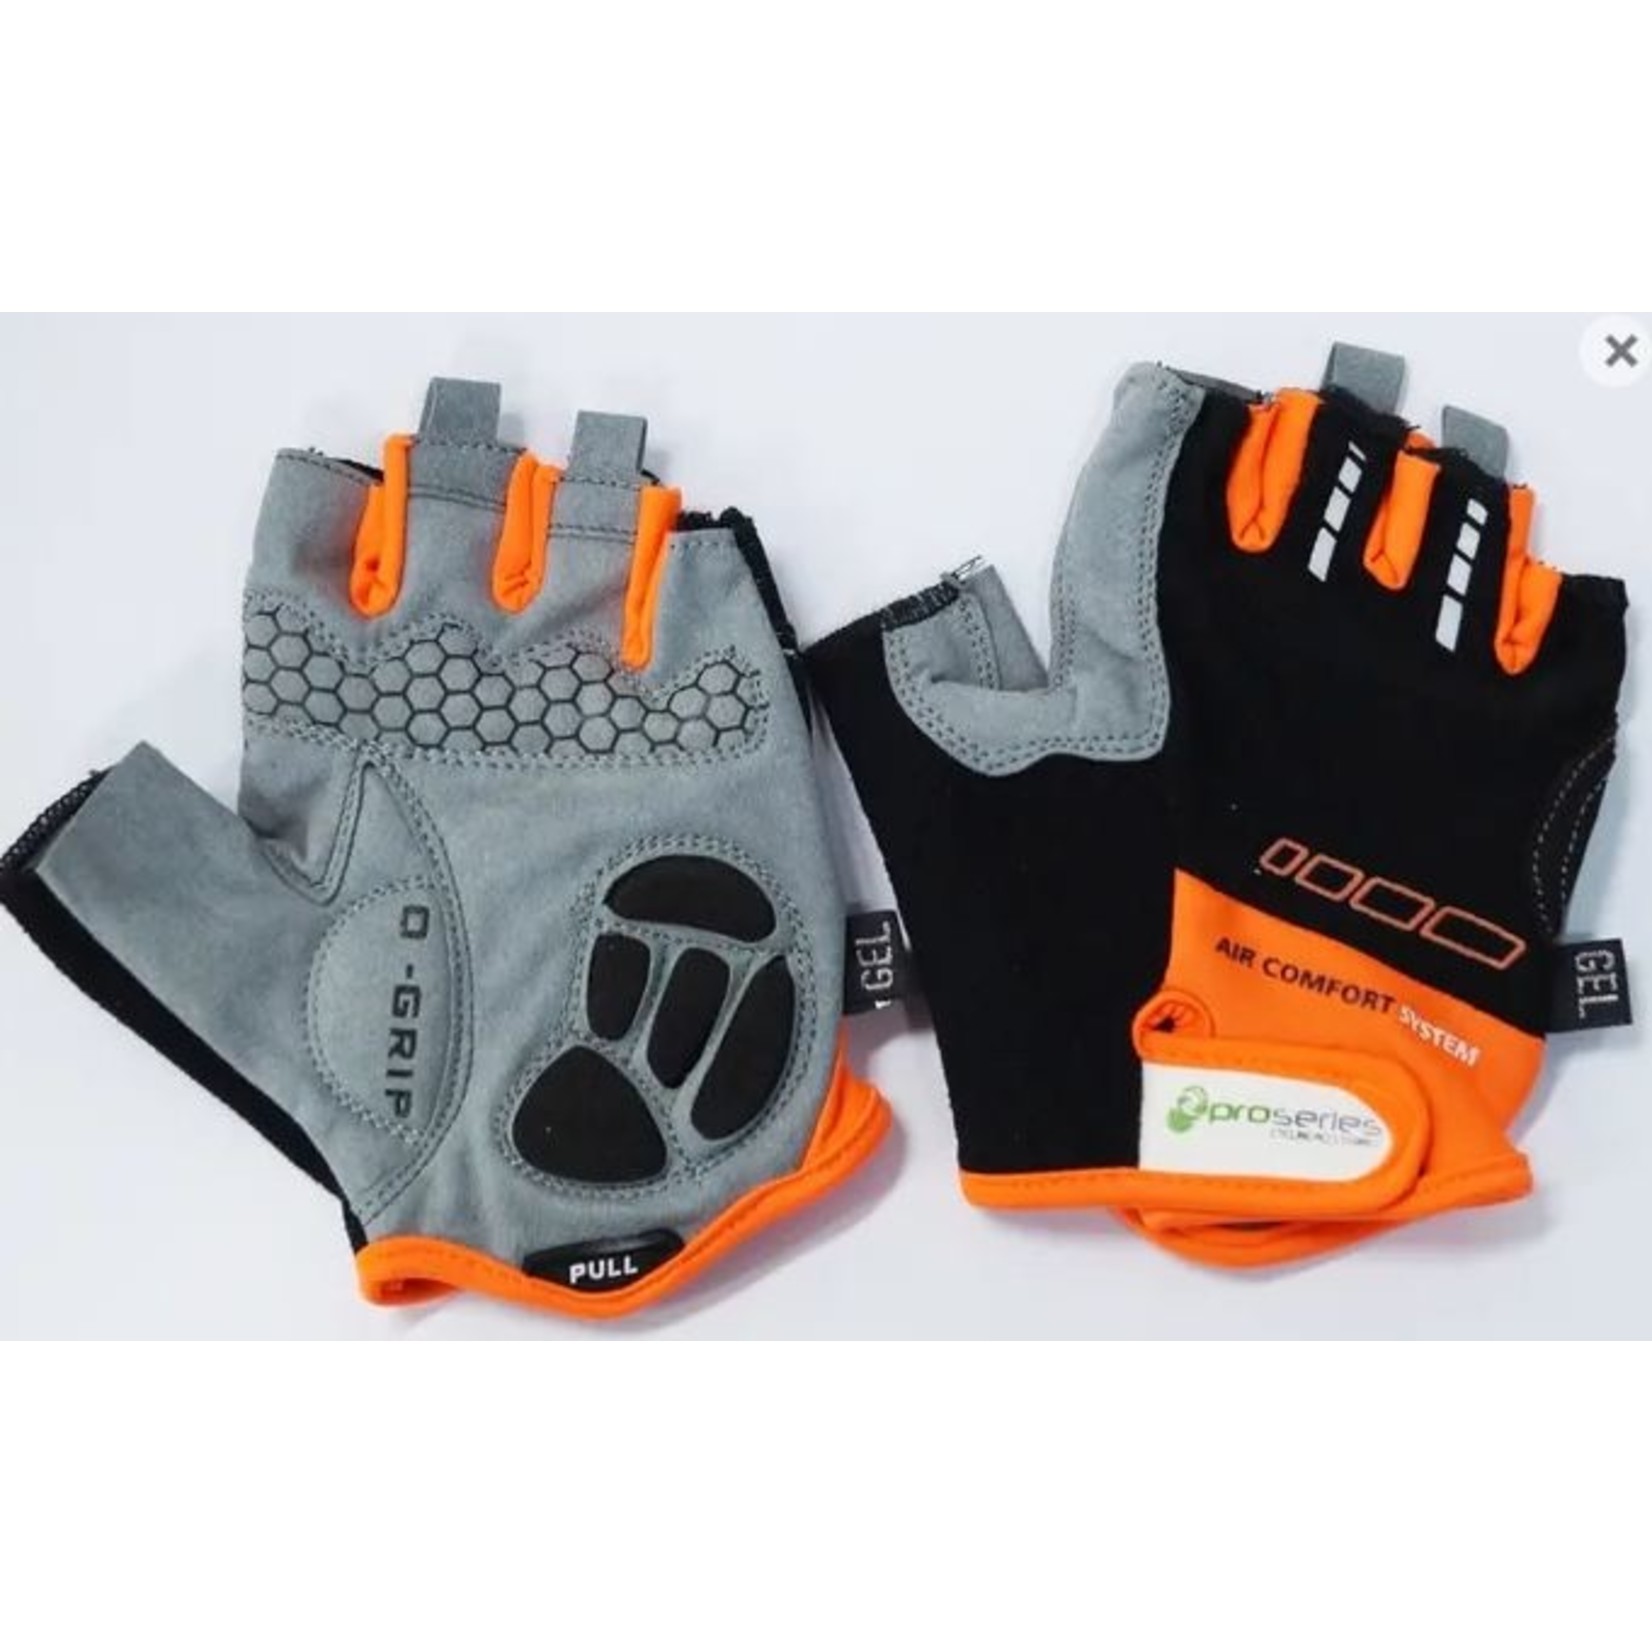 Pro Series Pro-Series - Gloves Amara Material With Gel Padding - Large - Black/Orange Trim